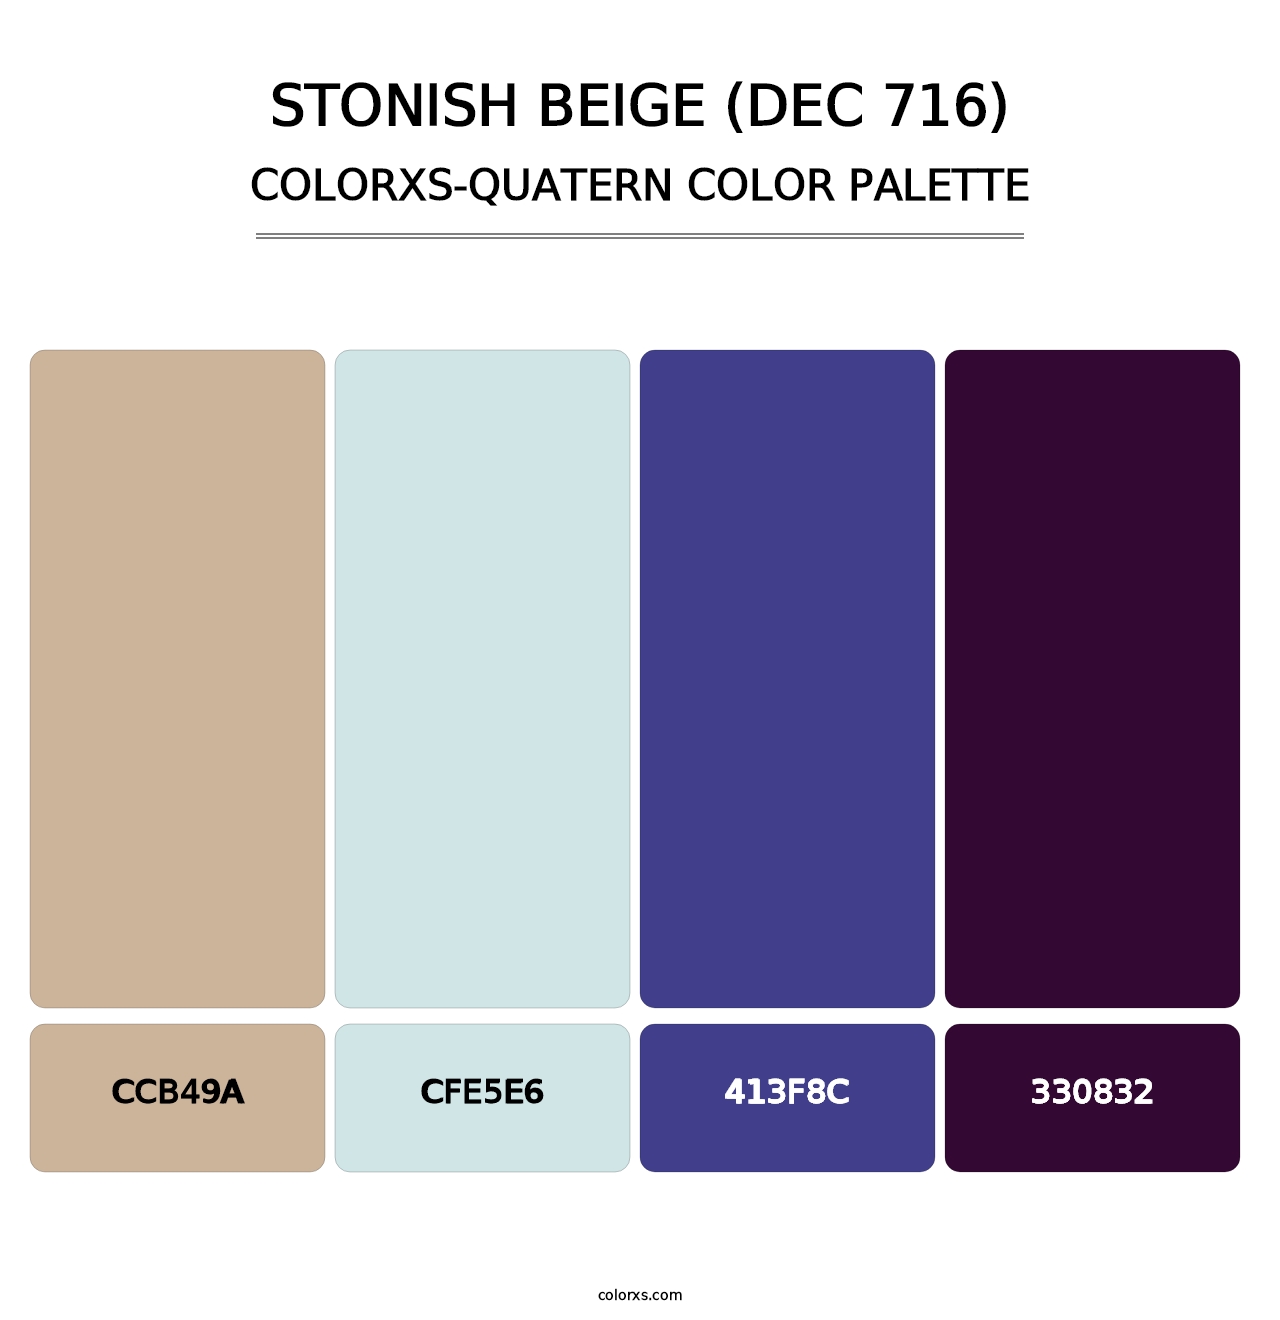 Stonish Beige (DEC 716) - Colorxs Quatern Palette